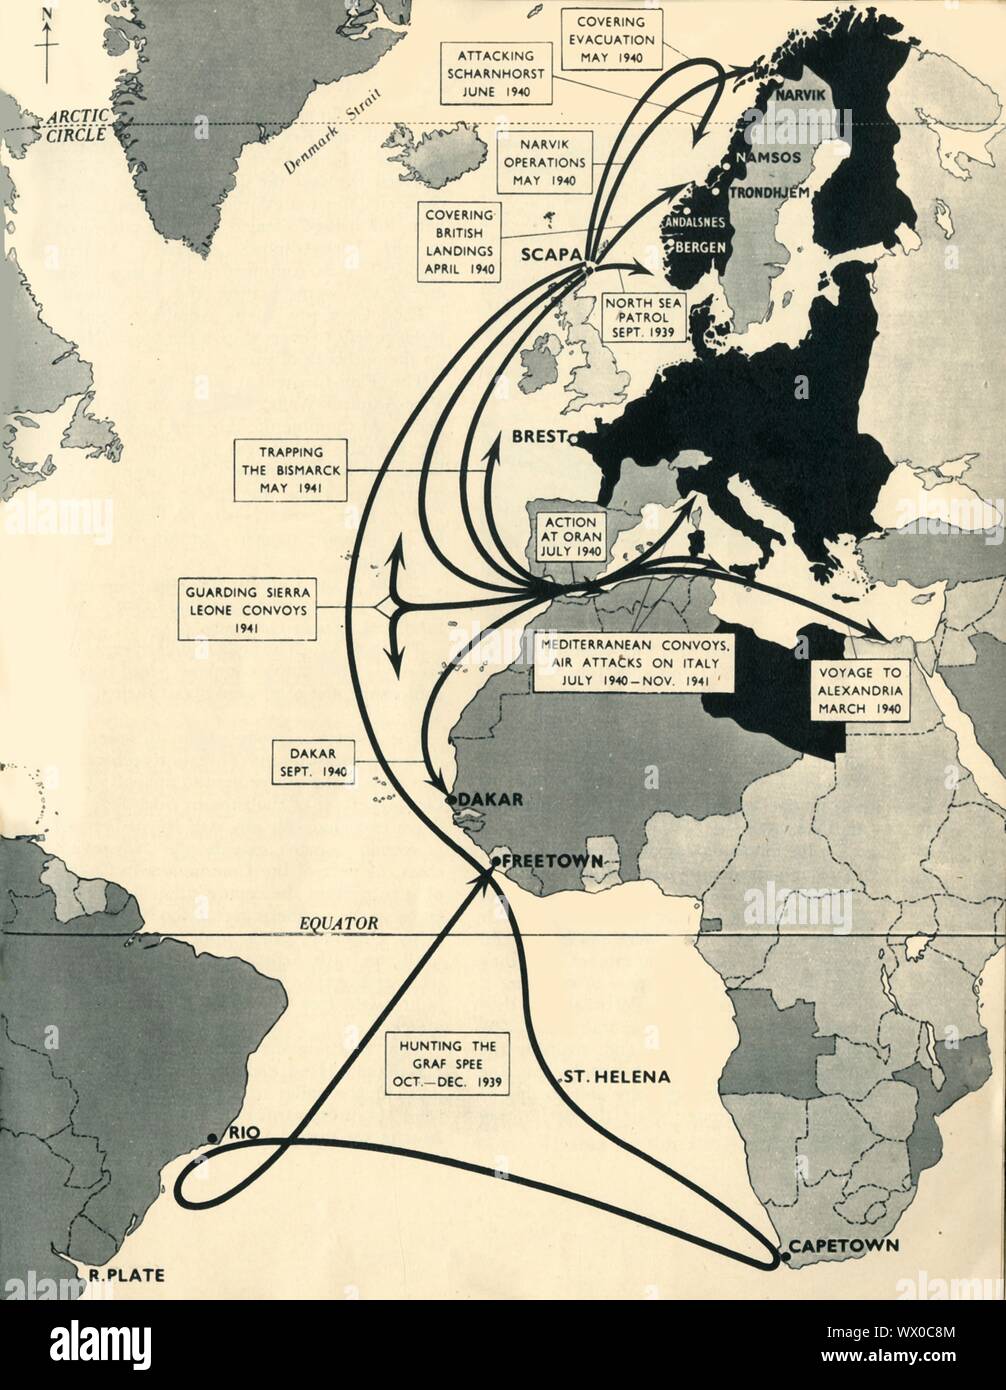 Carte montrant les mouvements de 'HMS Ark Royal', 1939-1941, (1942). Plan de l'océan Atlantique, l'Europe de l'ouest et d'Afrique, voyages et missions principal indiquant de la Marine royale britannique 'porte-avions Ark Royal' pendant la Seconde Guerre mondiale : la chasse du "Graf Spee", octobre-décembre 1939 ; la garde des convois de la Sierra Leone, 1941 ; piégeage l 'Bismarck', mai 1941 ; couvrant les débarquements britanniques, avril 1940 ; attaquer 'Scharnhorst', juin 1940 ; couvrant l'évacuation, mai 1940 ; Opérations de Narvik, mai 1940 ; patrouille de la mer du Nord, septembre 1939 ; l'action à Oran, en juillet 1940 ; la Méditerranée convois, Attac Air Banque D'Images